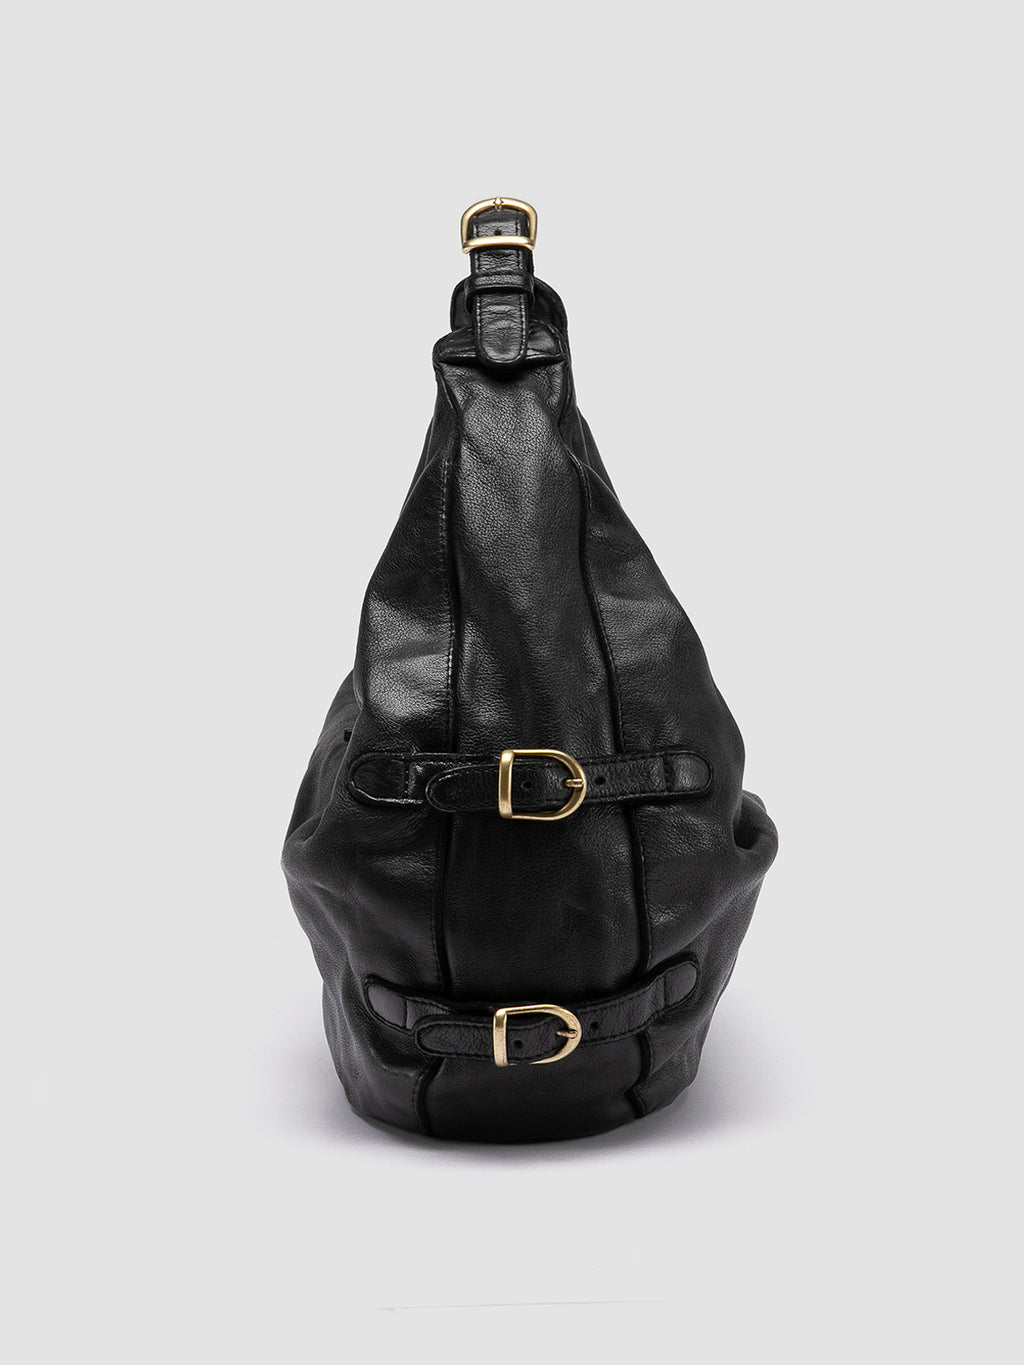 JULIE 008 - Black Leather Shoulder Bag